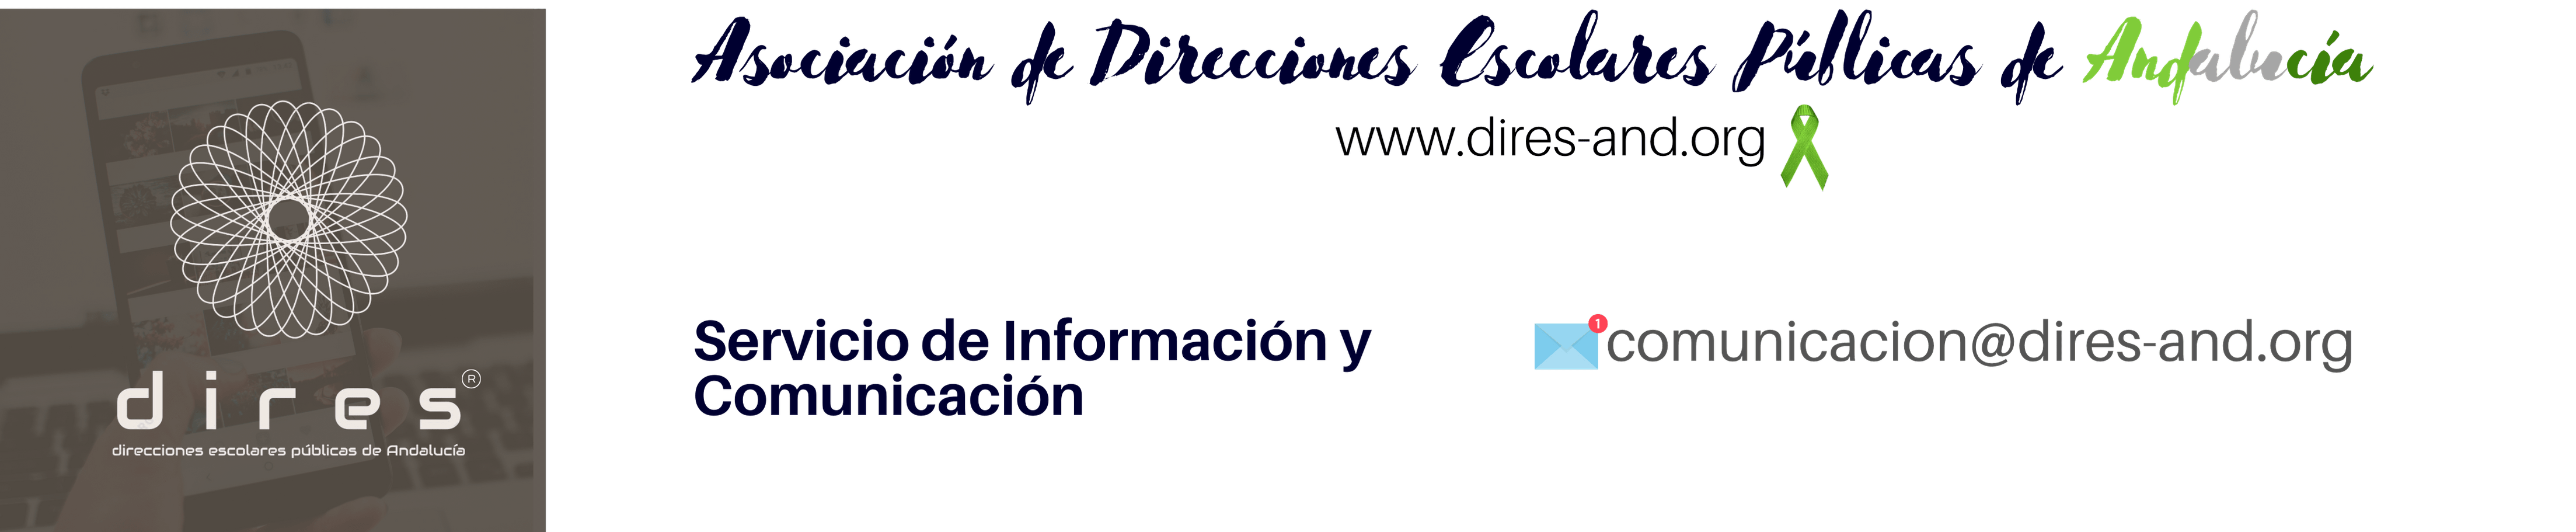 banner_informacion_comunicacion